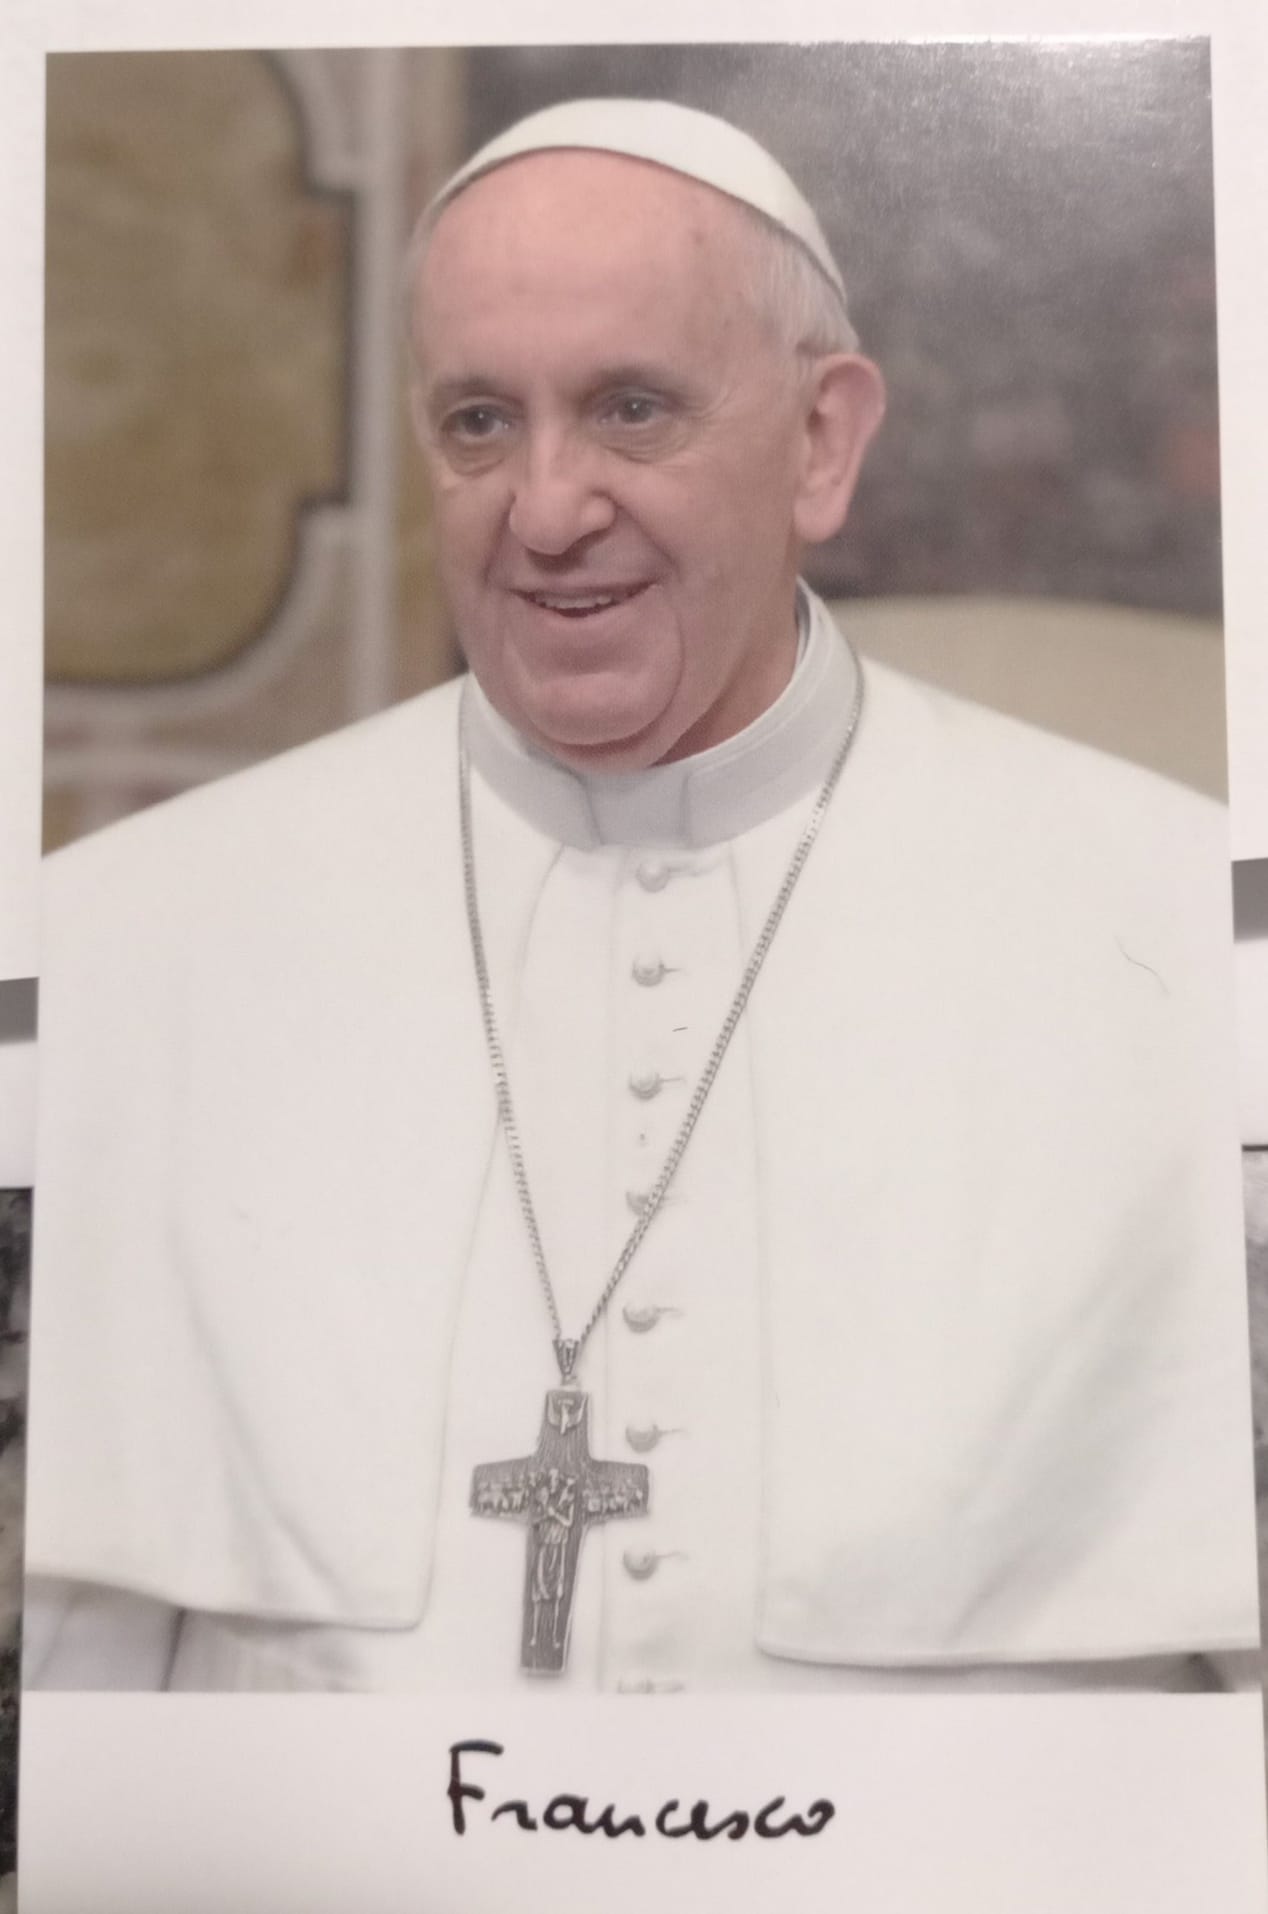 Curso pré-vestibular da ‘Igrejinha de Uvaranas’ é reconhecido pelo Papa e Vaticano